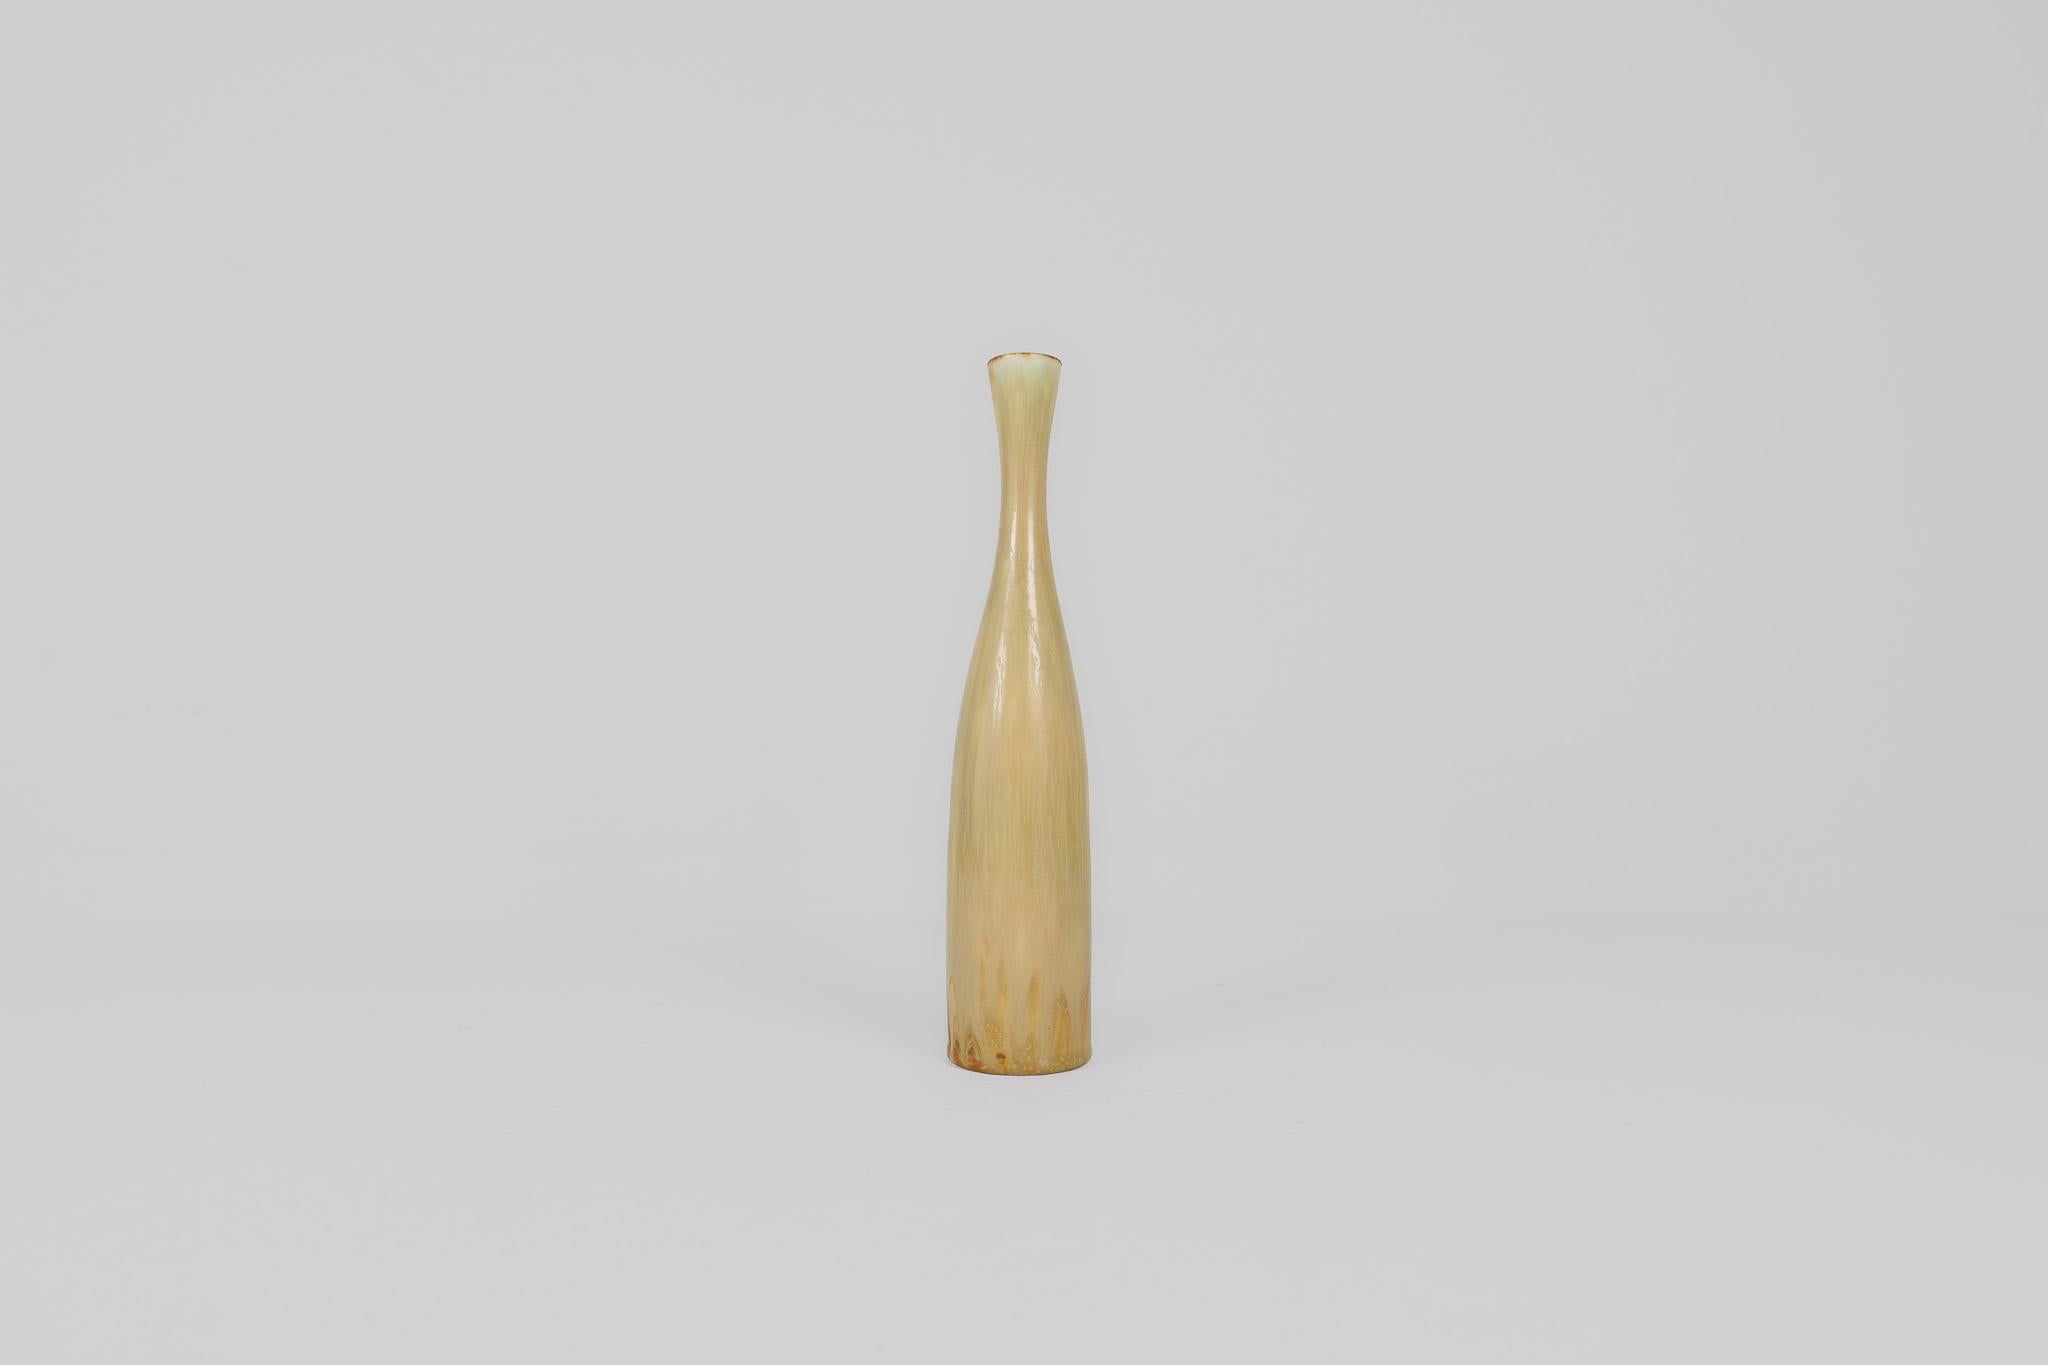 Midcentury Modern Sculptural Vase Rörstrand by Carl Harry Stålhane, Sweden, 1950 For Sale 1